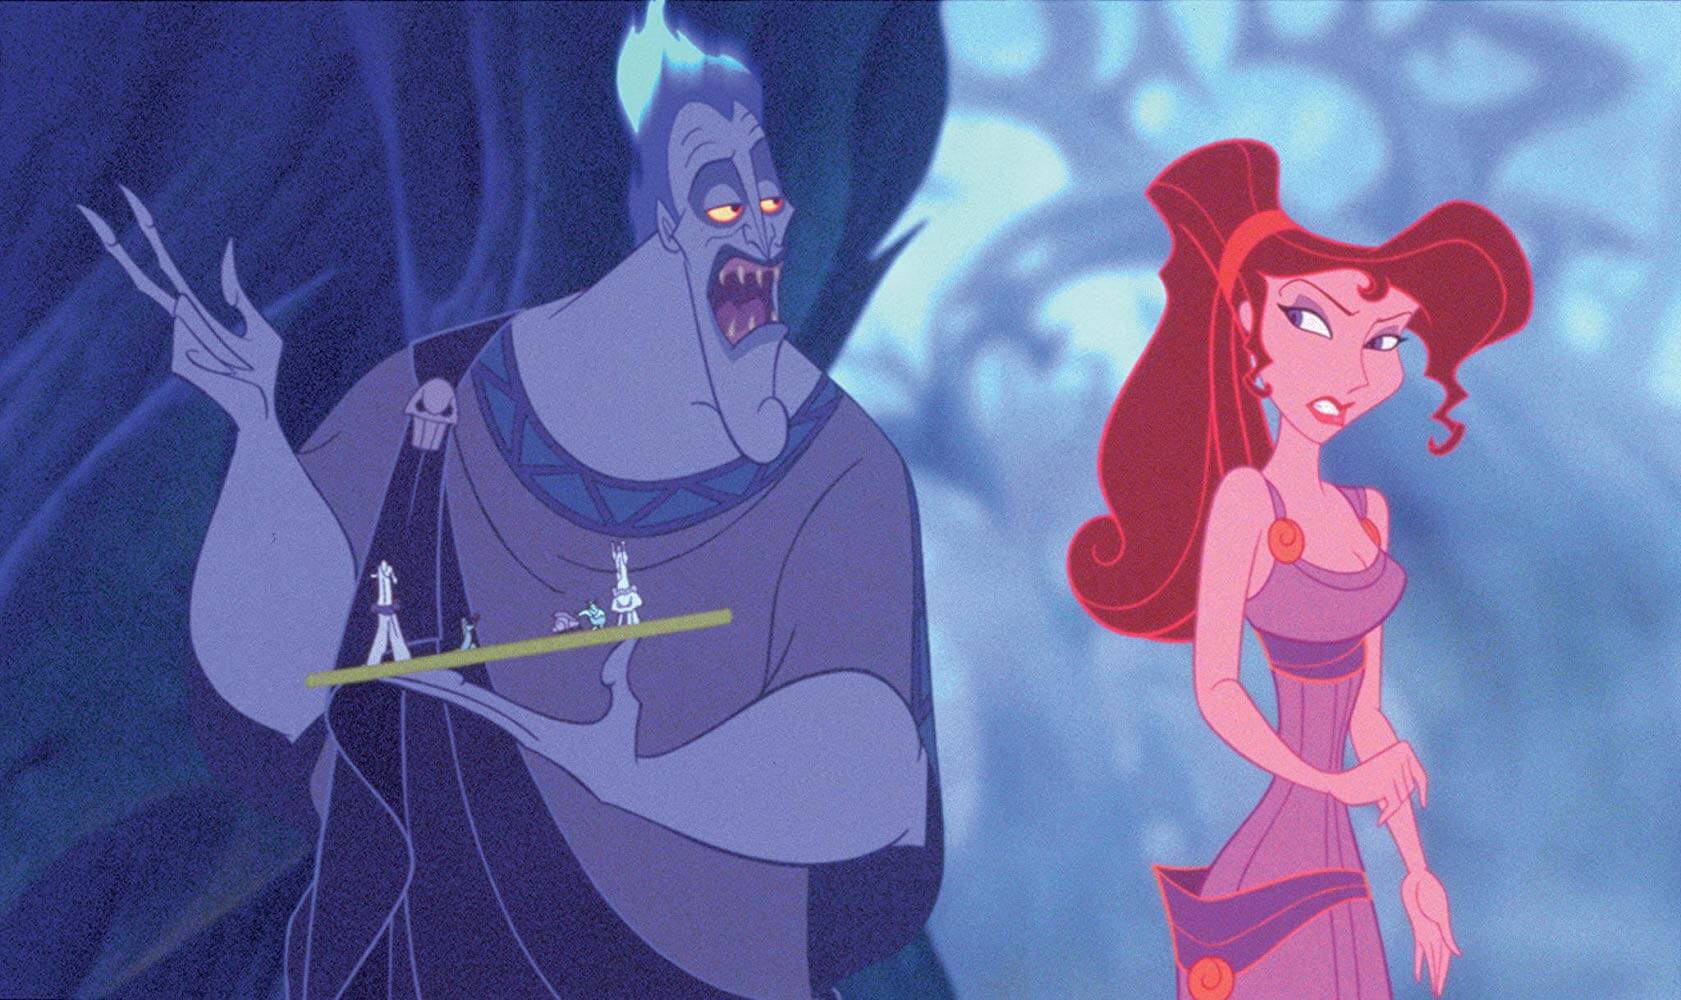 ¡Trivia sobre villanos de Disney! ¿Qué tanto sabes acerca de sus películas?